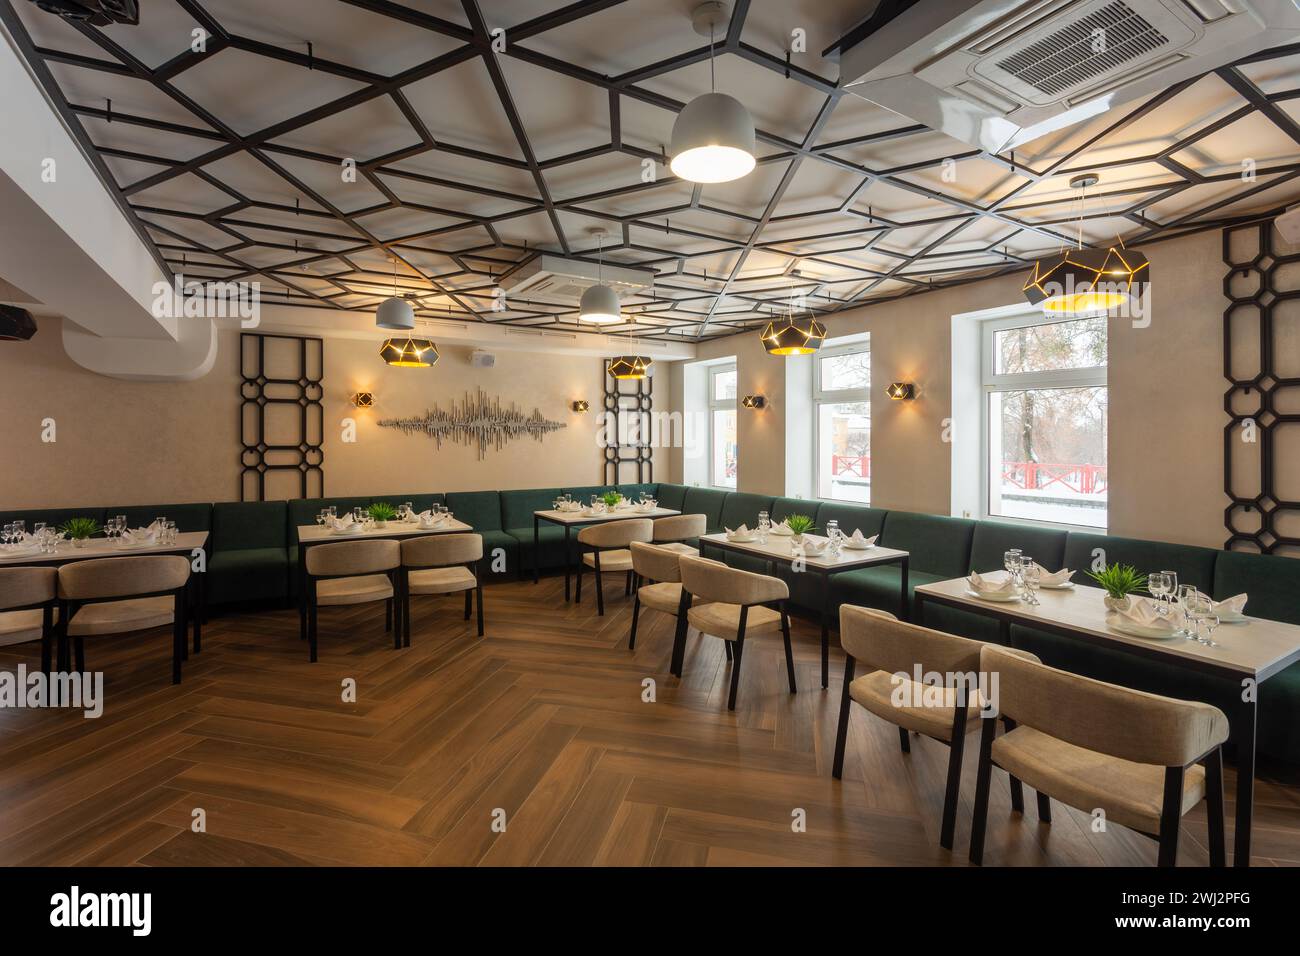 Modernes Interieur eines städtischen Restaurants oder Cafés mit Restaurants. Sanfte grüne Sofas und beige Stühle an Tischen, serviert mit Gläsern, Tellern und Servietten Stockfoto